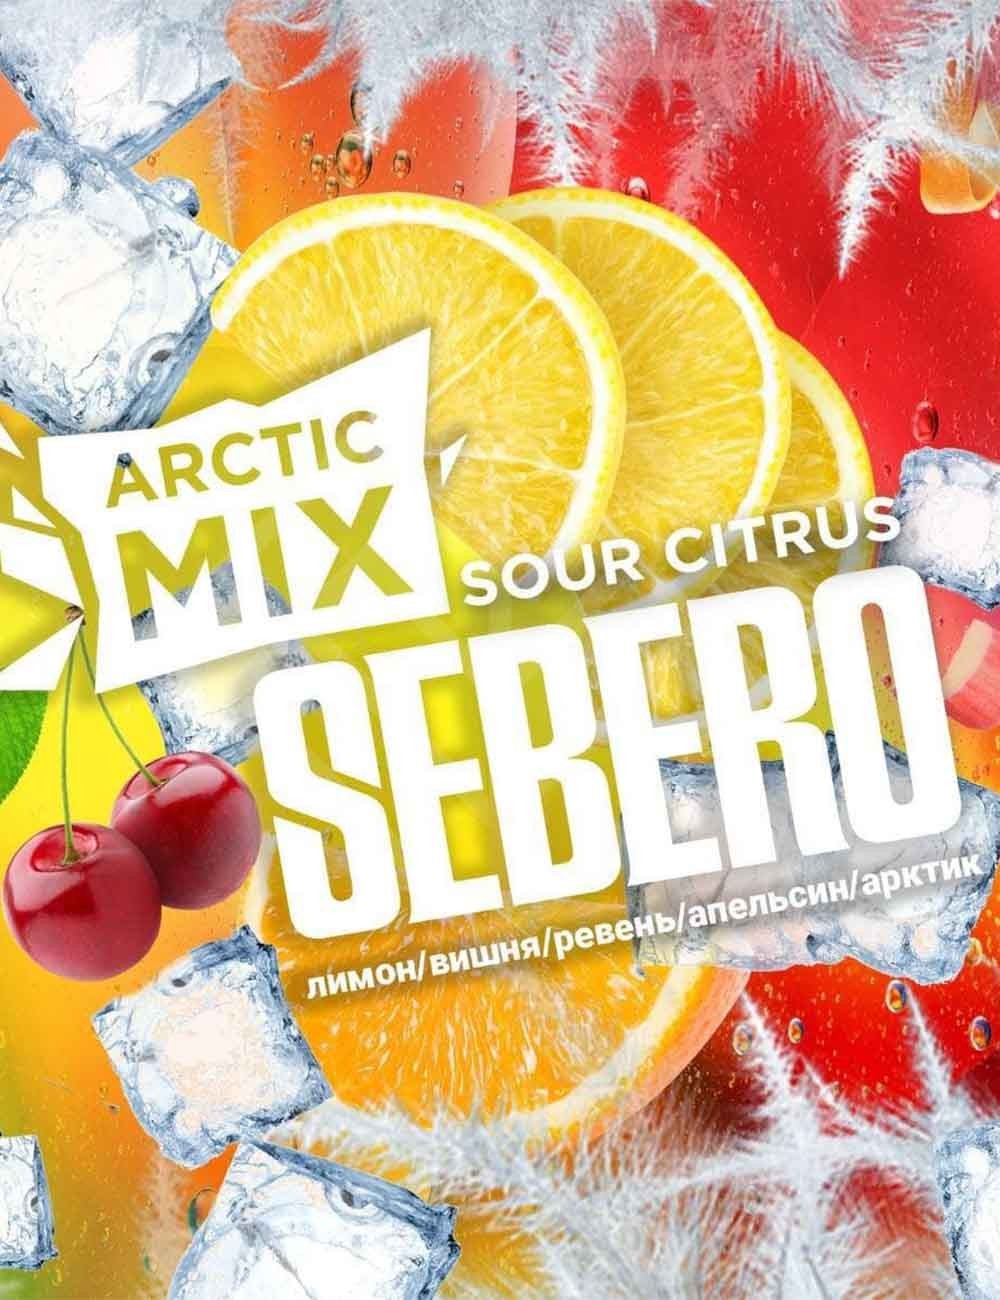 "Arctic Mix" Sour Citrus (Cour Ctr)